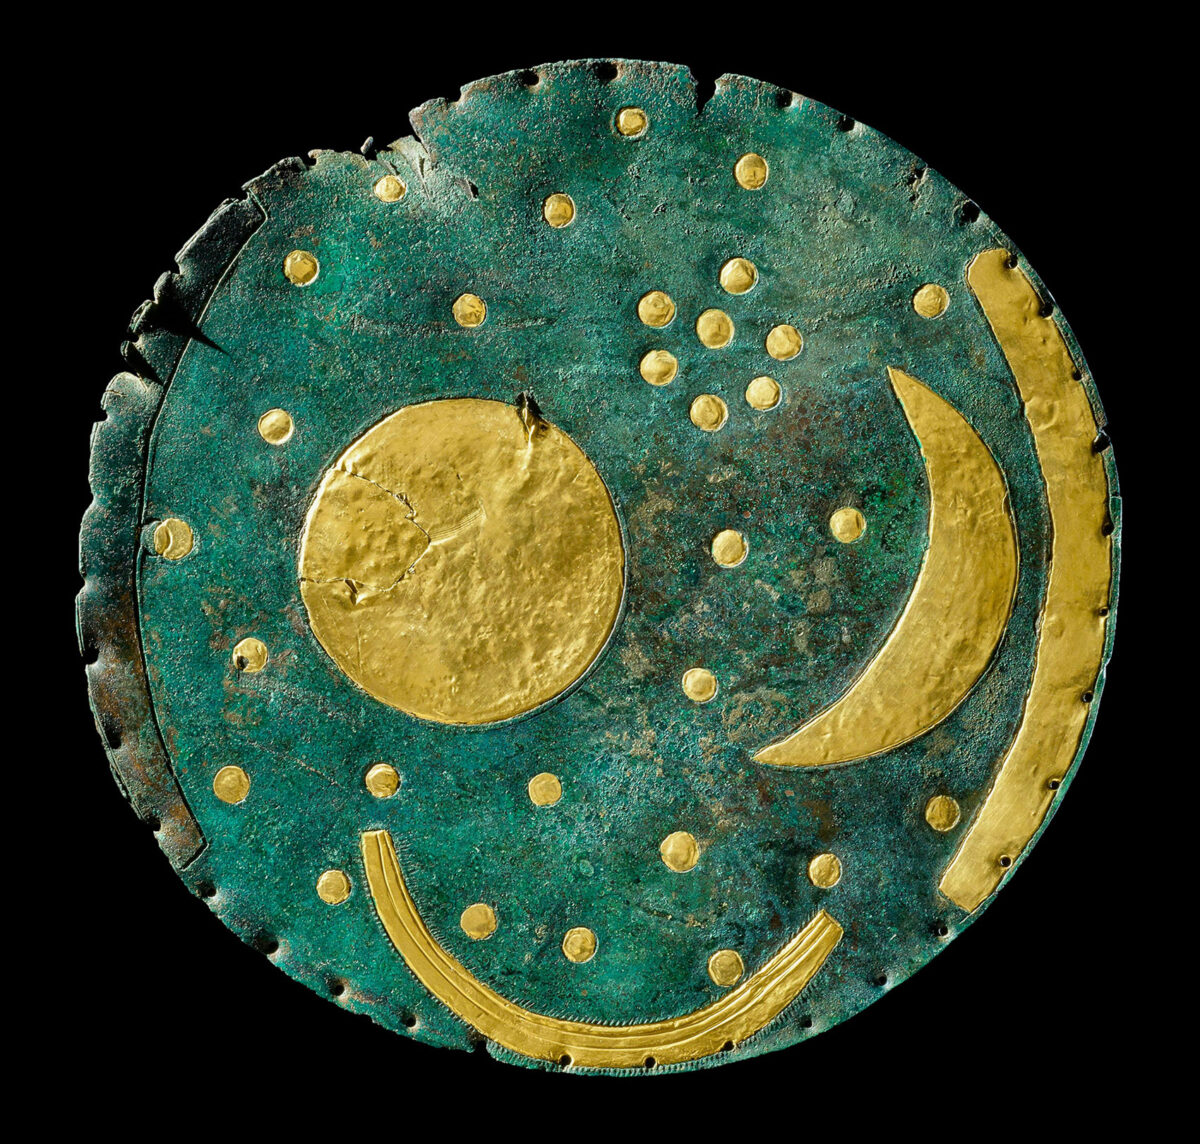 Nebra Sky Disc. Μεταλλικός δίσκος στον οποίο απεικονίζεται ο νυχτερινός ουρανός. Γερμανία, περ. 1600 π.Χ. © Landesamt für Denkmalpflege und Archäologie Sachsen-Anhalt, Juraj Lipták.